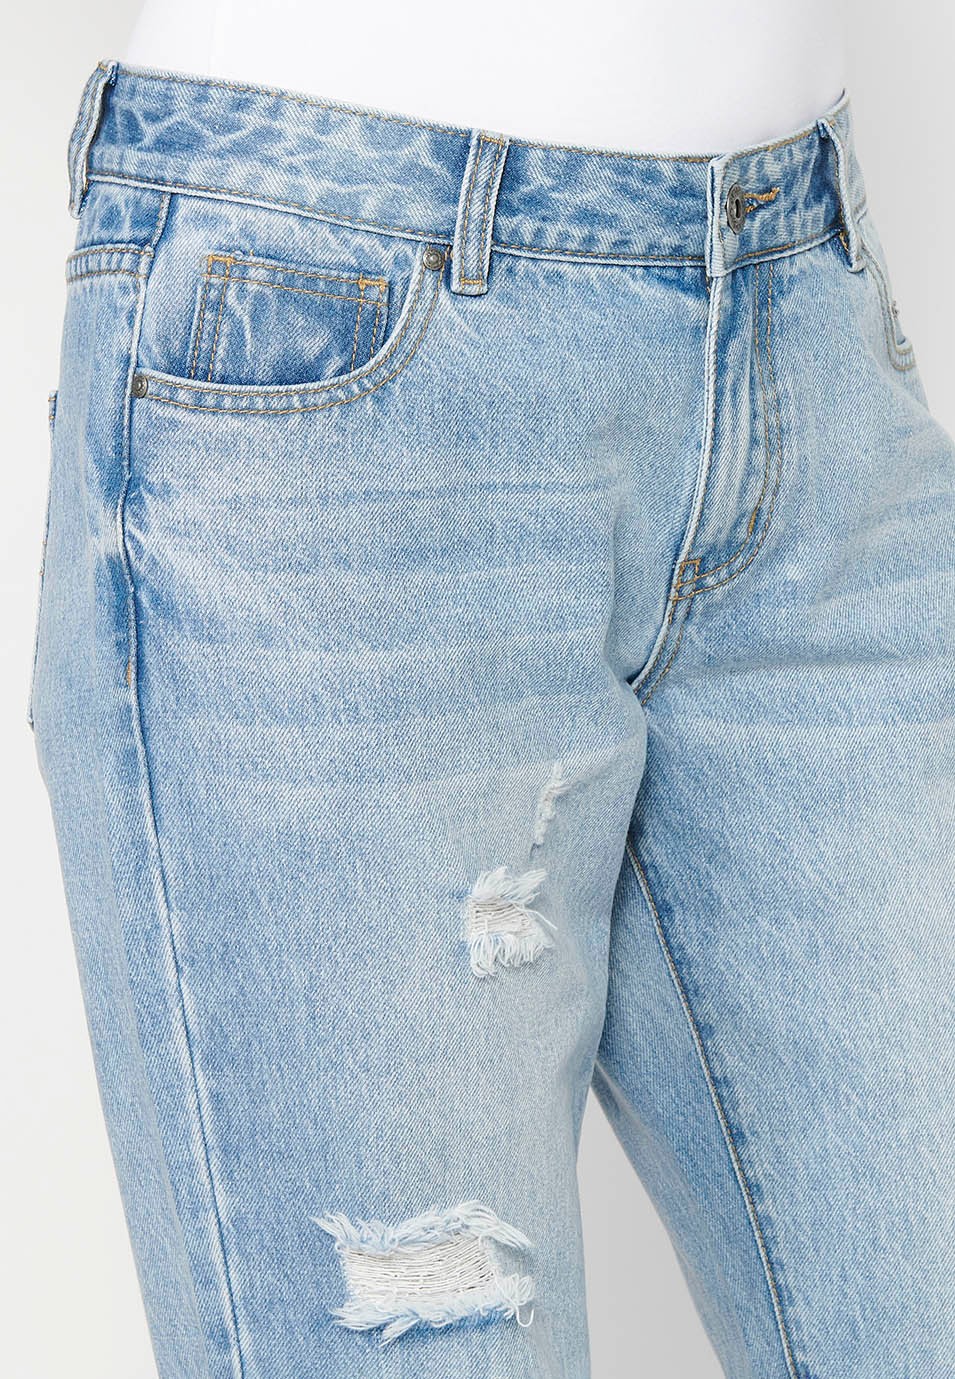 Pantalons llargs rectes amb detalls de trencats davanters color blau per a dona